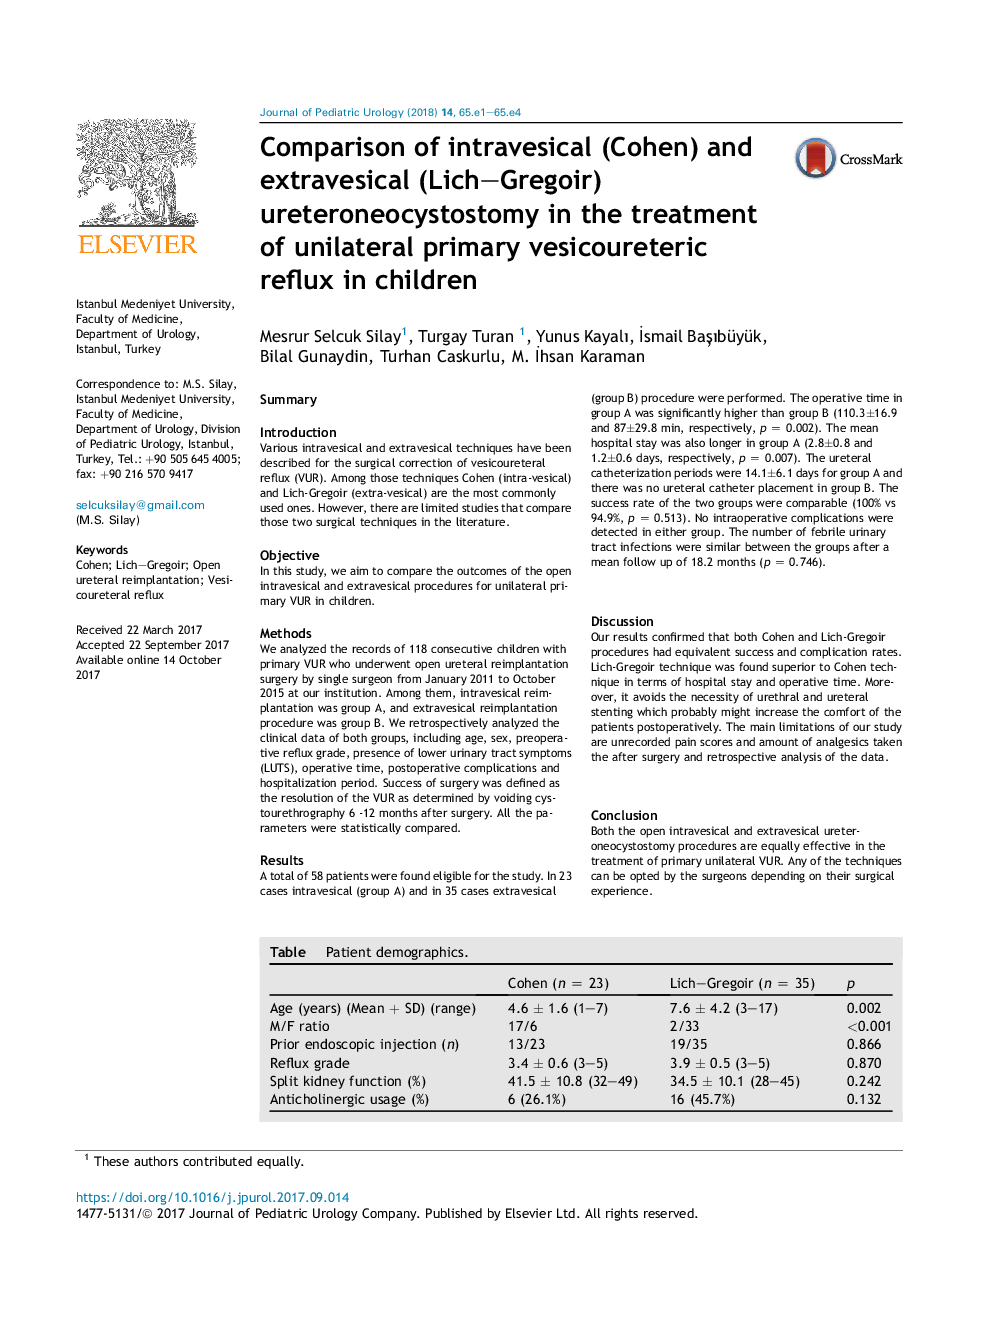 مقایسه اورترونئوسیستوستومی درون مثانه‌ای (کوهن) و برون‌مثانه‌ای (لیچ-گرگویر) در درمان رفلاکس وسیکورتریک اولیه در کودکان